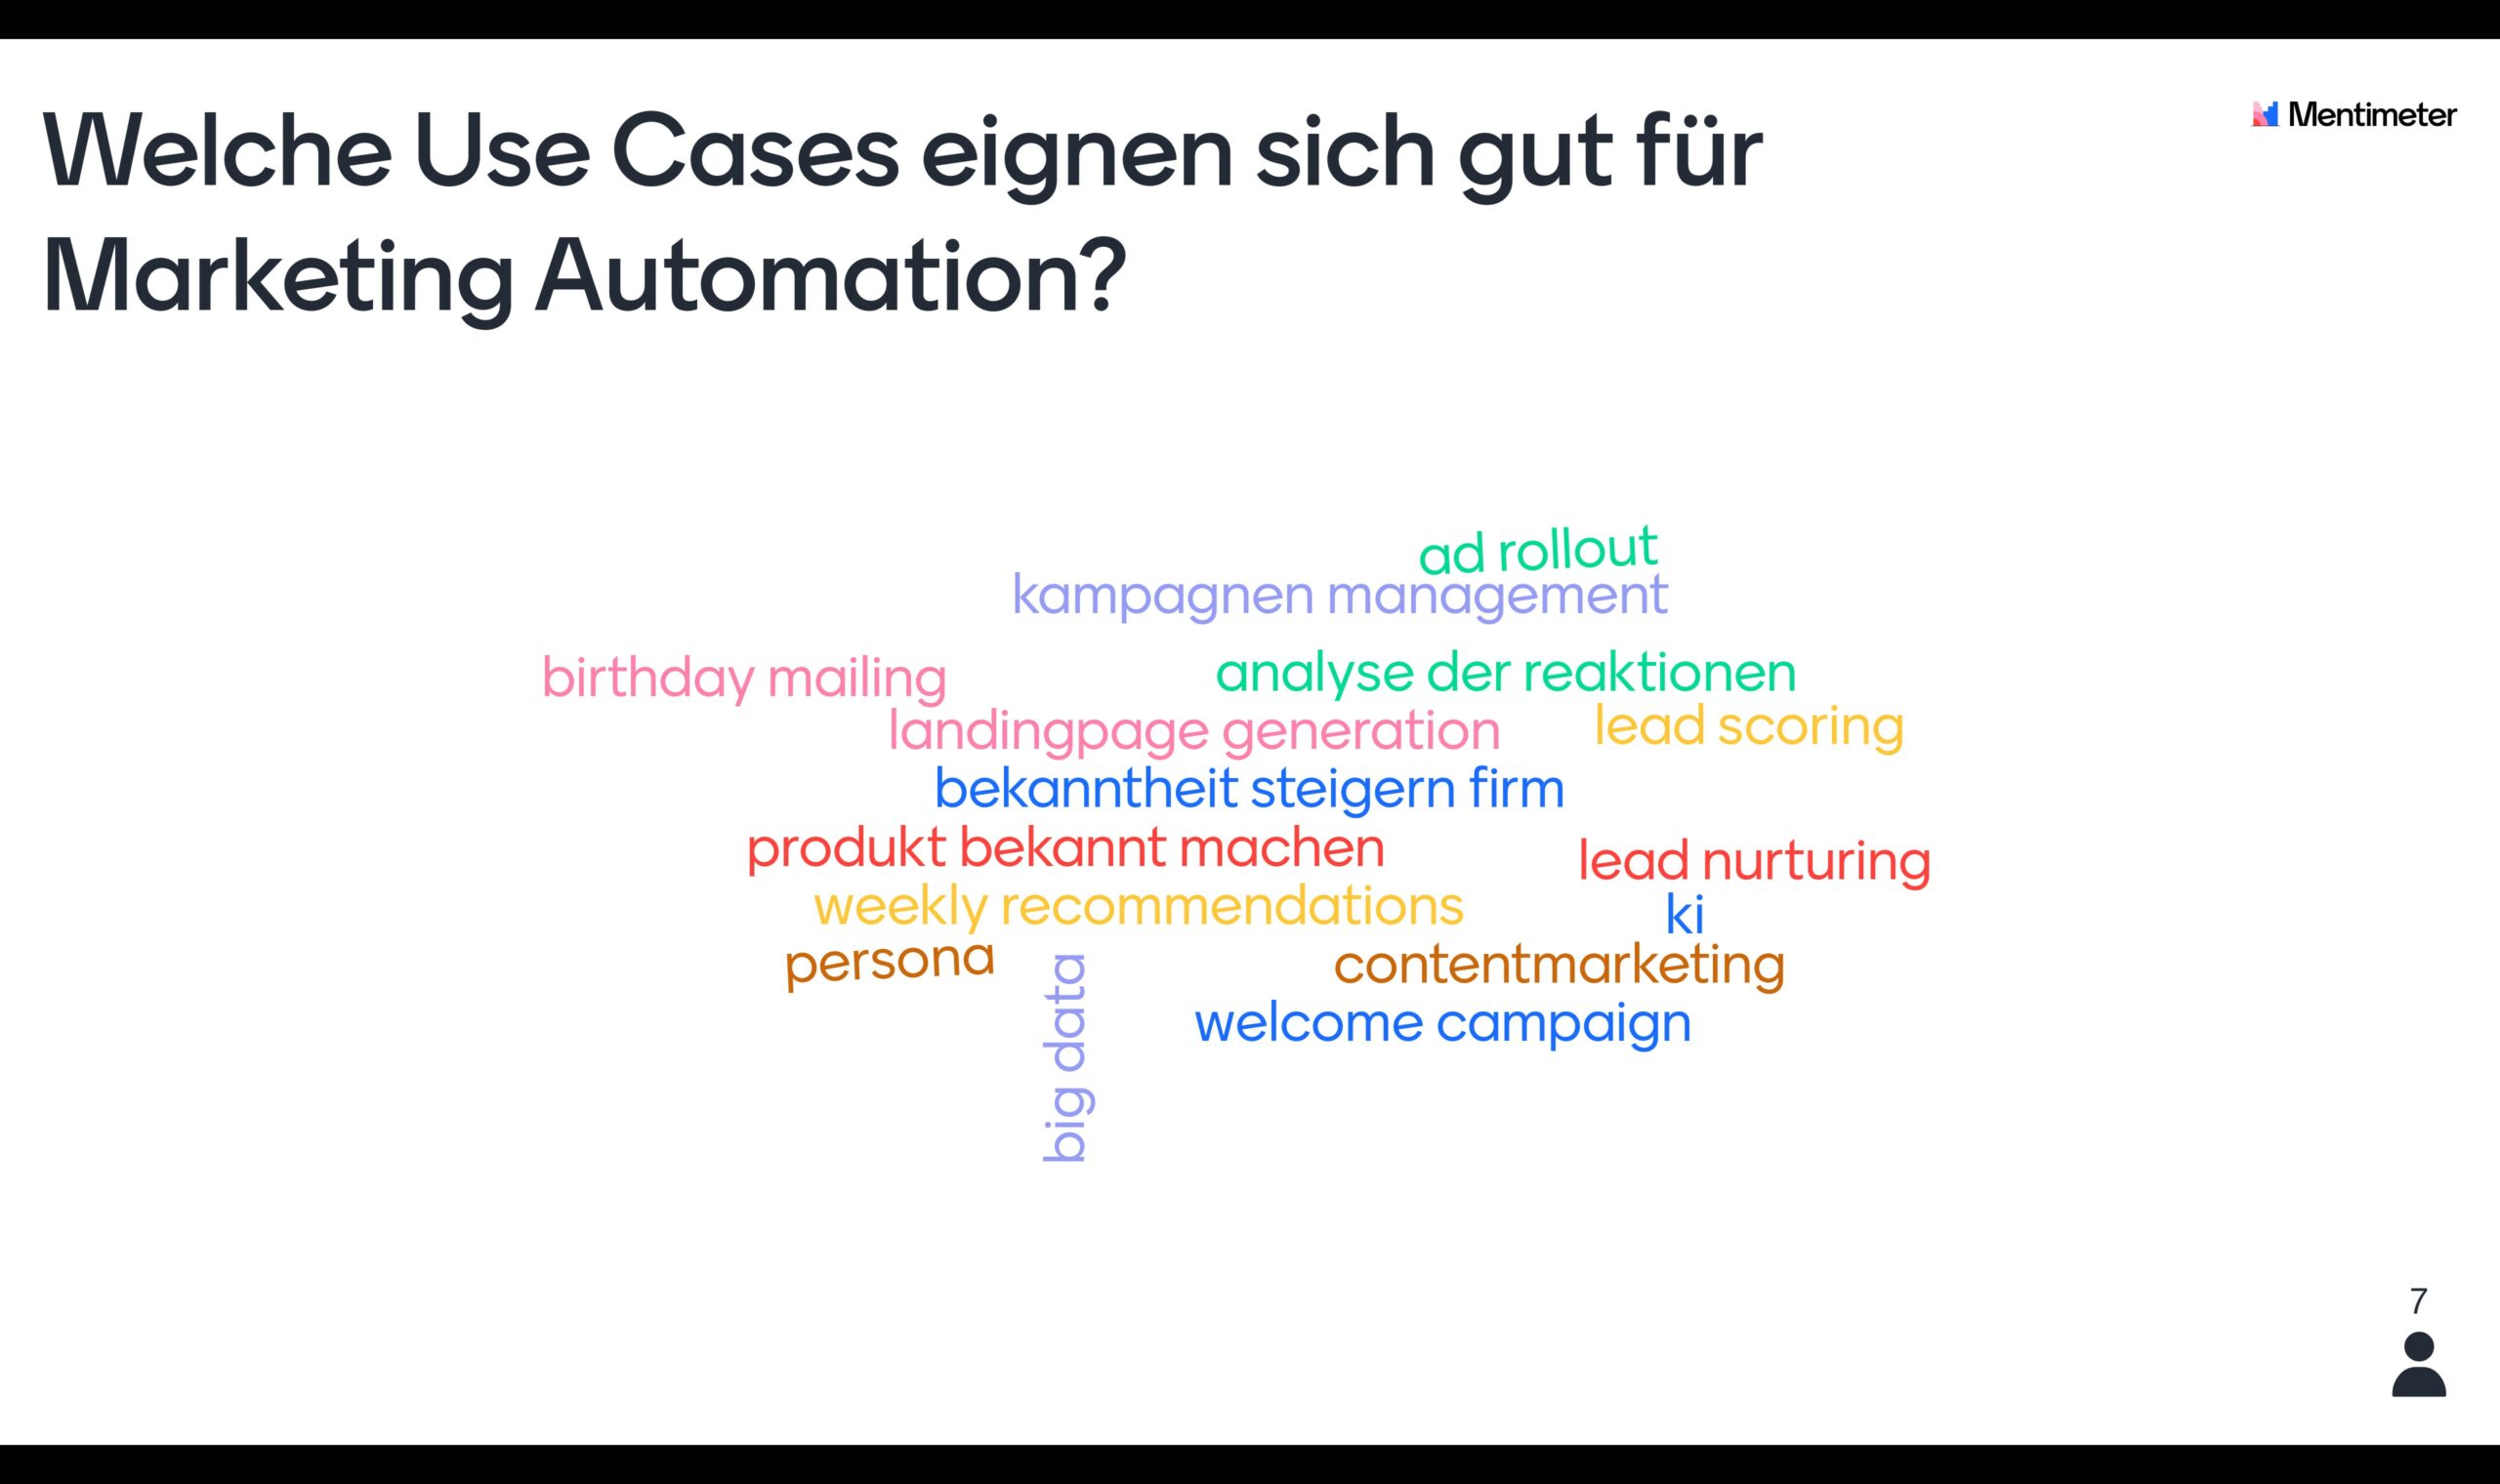 Welche Use Cases Eignen Sich Gut fuer Marketing Automation - Leipzig